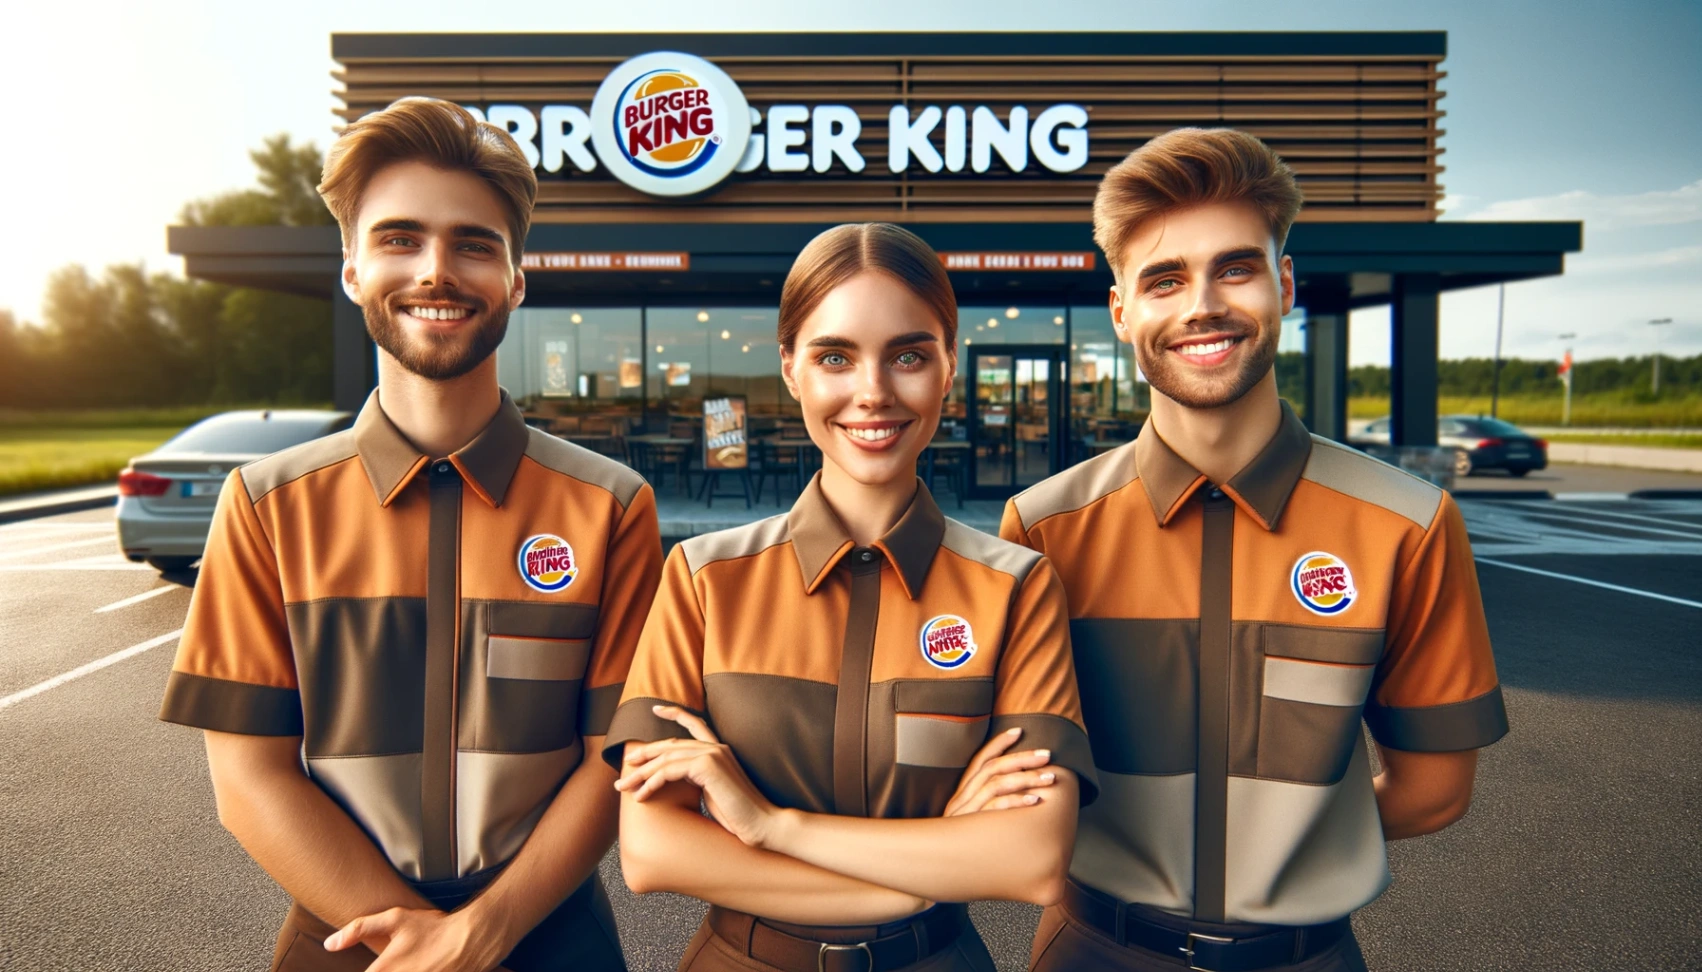 Burger King - Belajar Bagaimana Memohon Posisi